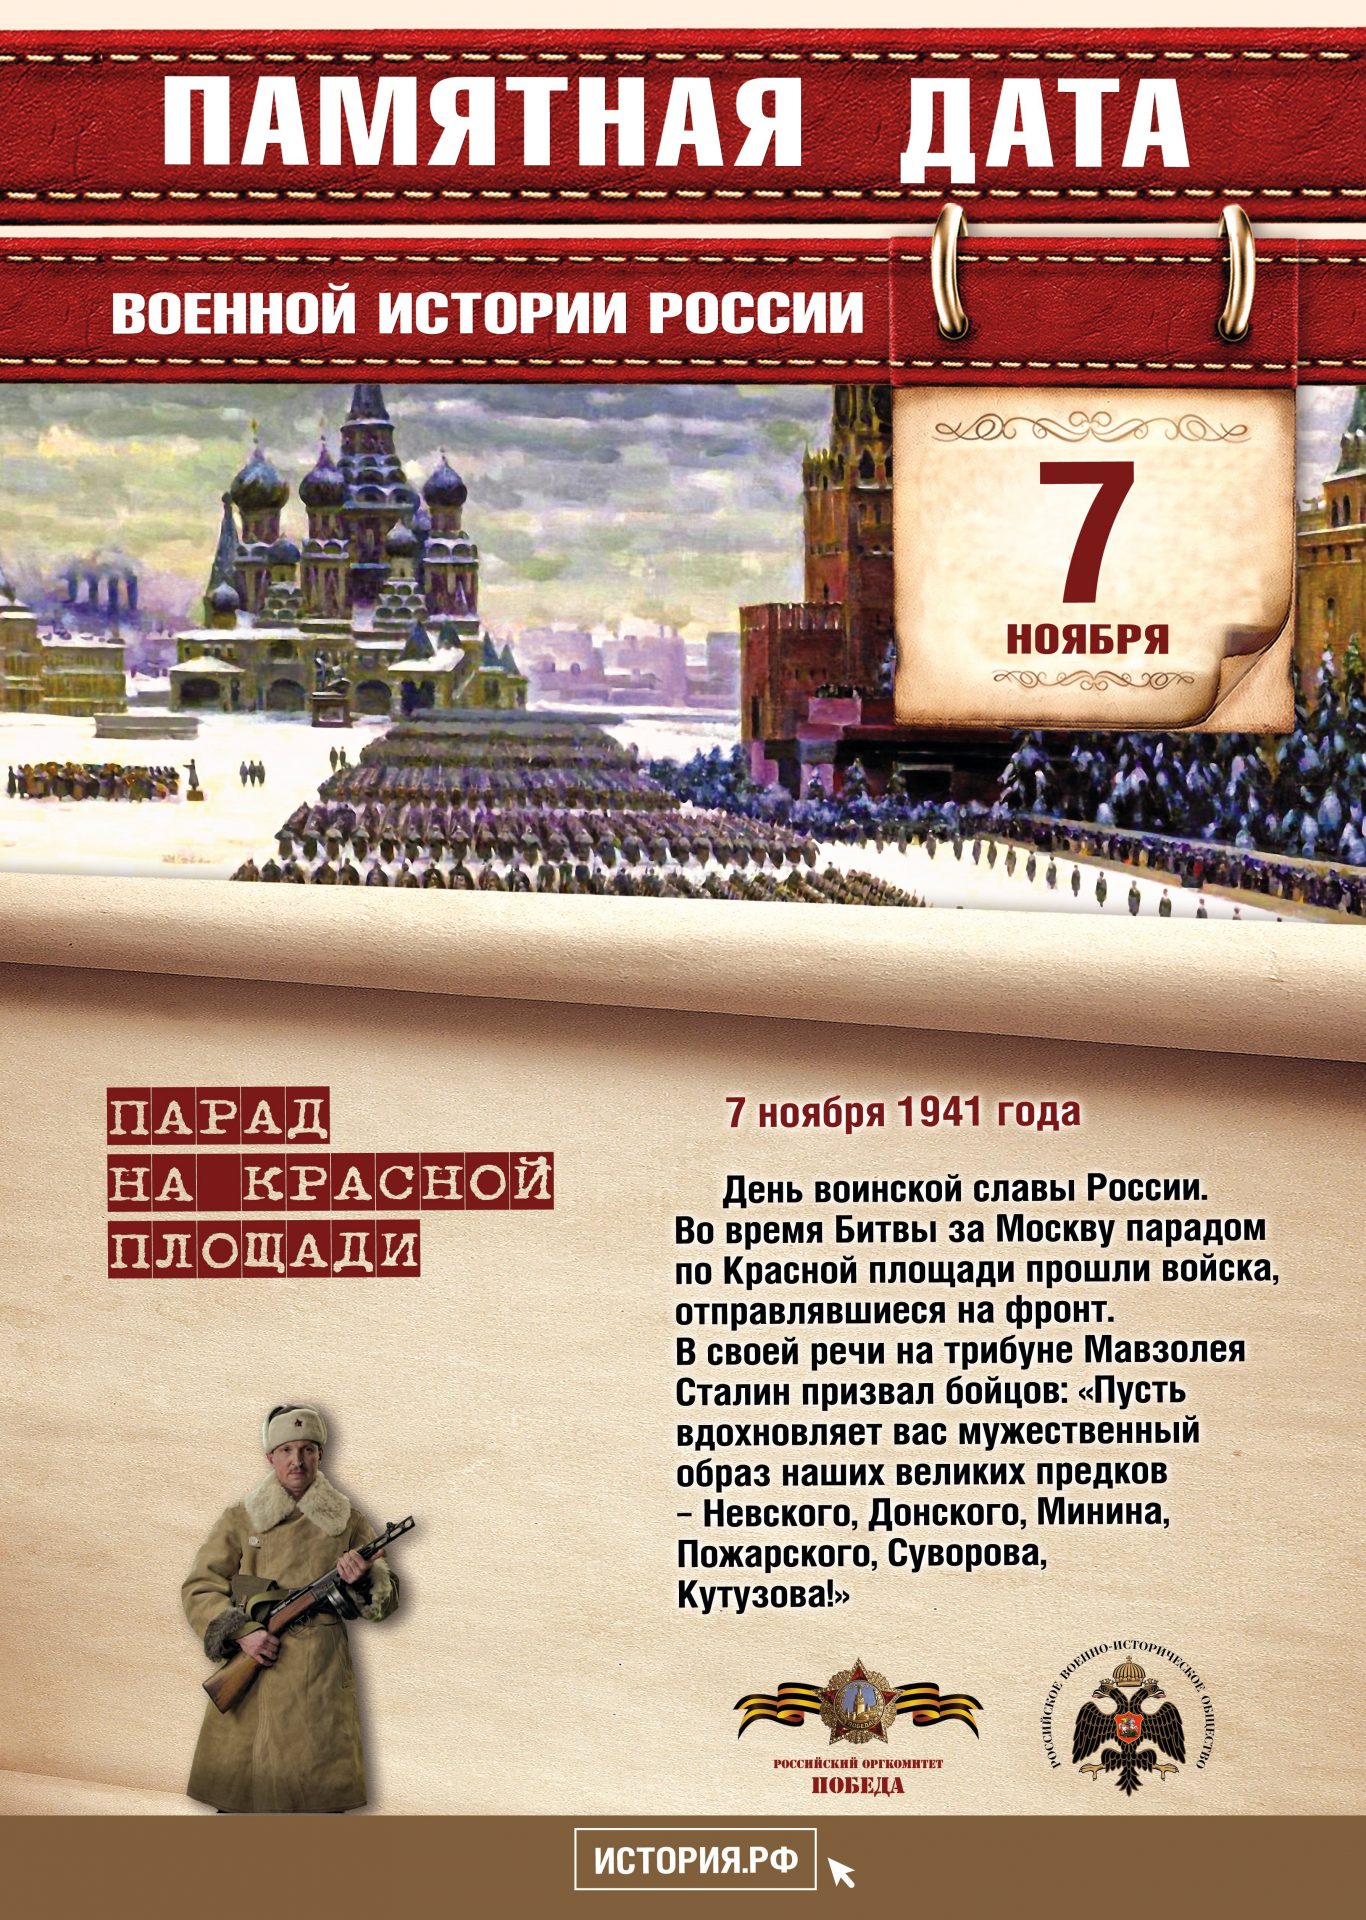 Памятные даты военной истории России в 2020 году ноябрь